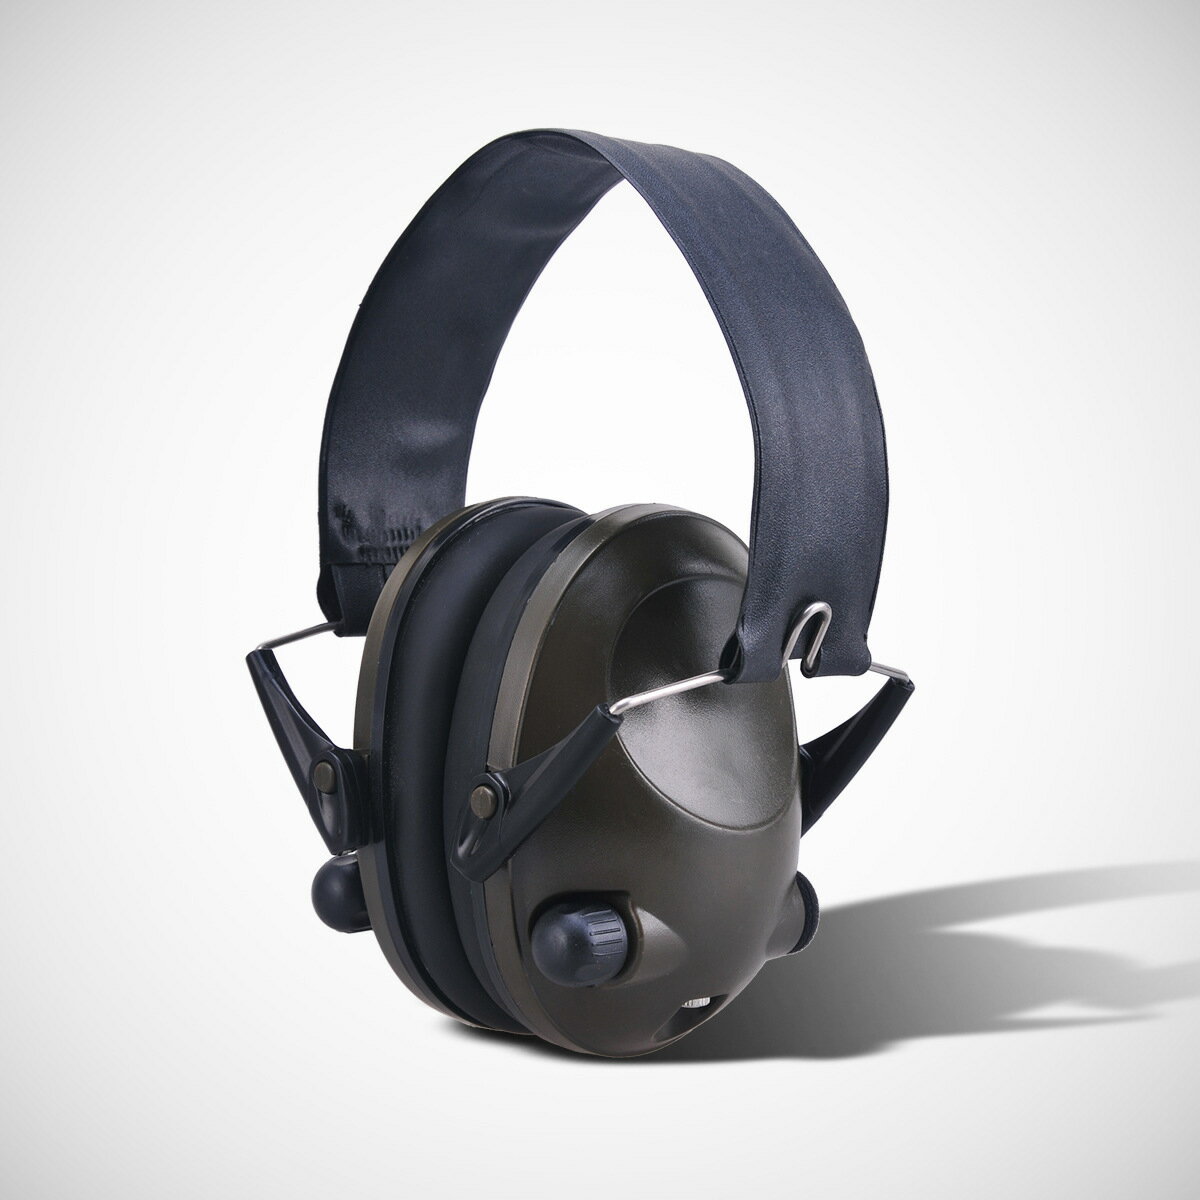 降噪耳罩 隔音耳罩 靜音耳罩 工業降噪 射擊耳罩 打靶耳罩 TAC 6s射擊軍事智能隔音耳罩拾音防噪音主動戰術耳機 可開發票